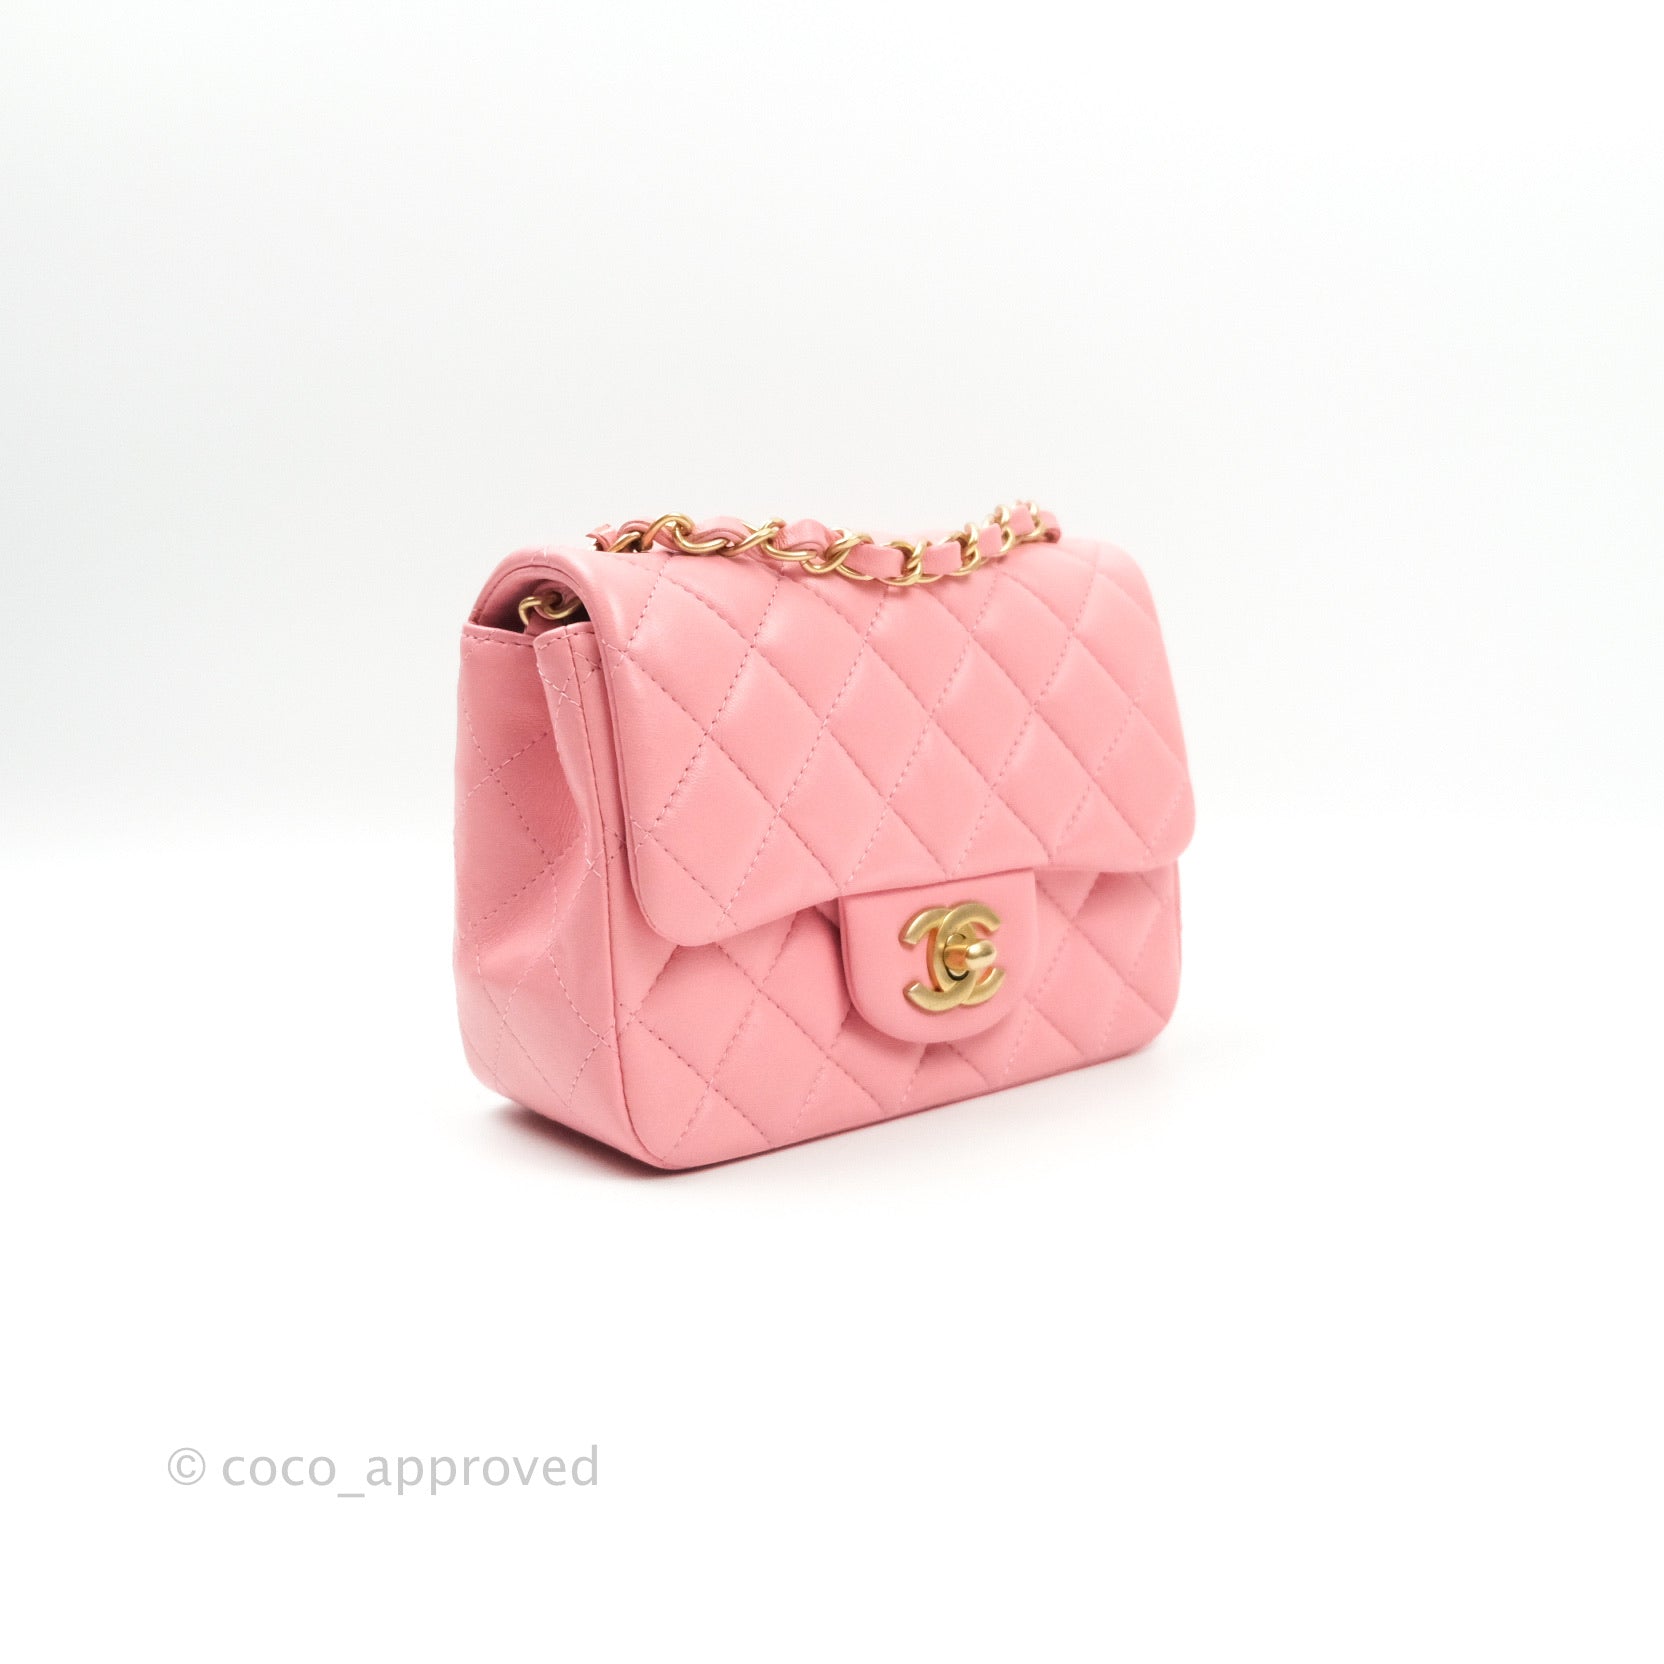 chanel pink bag vintage leather